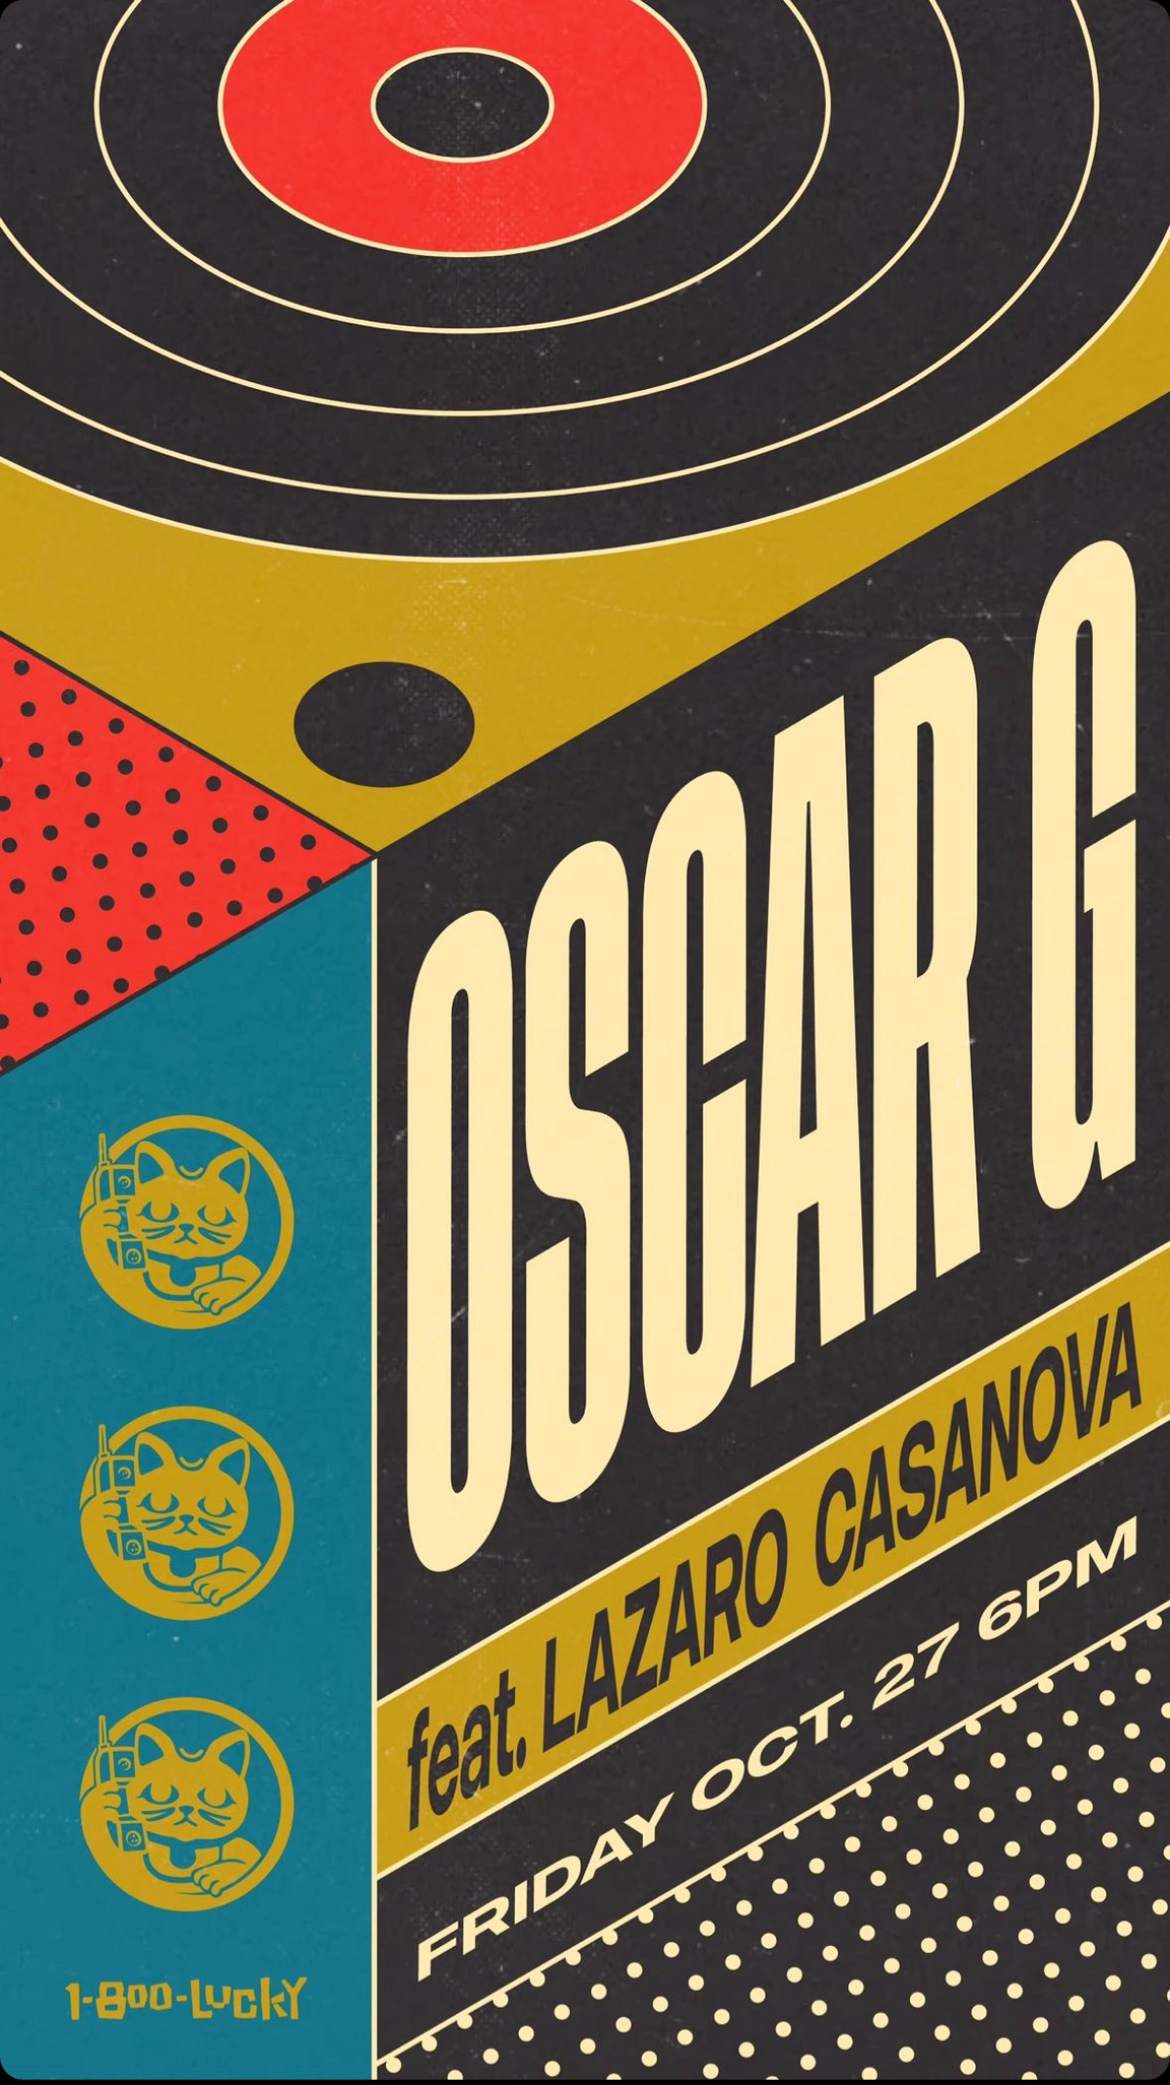 Oscar G feat. Lazaro Casanova - フライヤー表